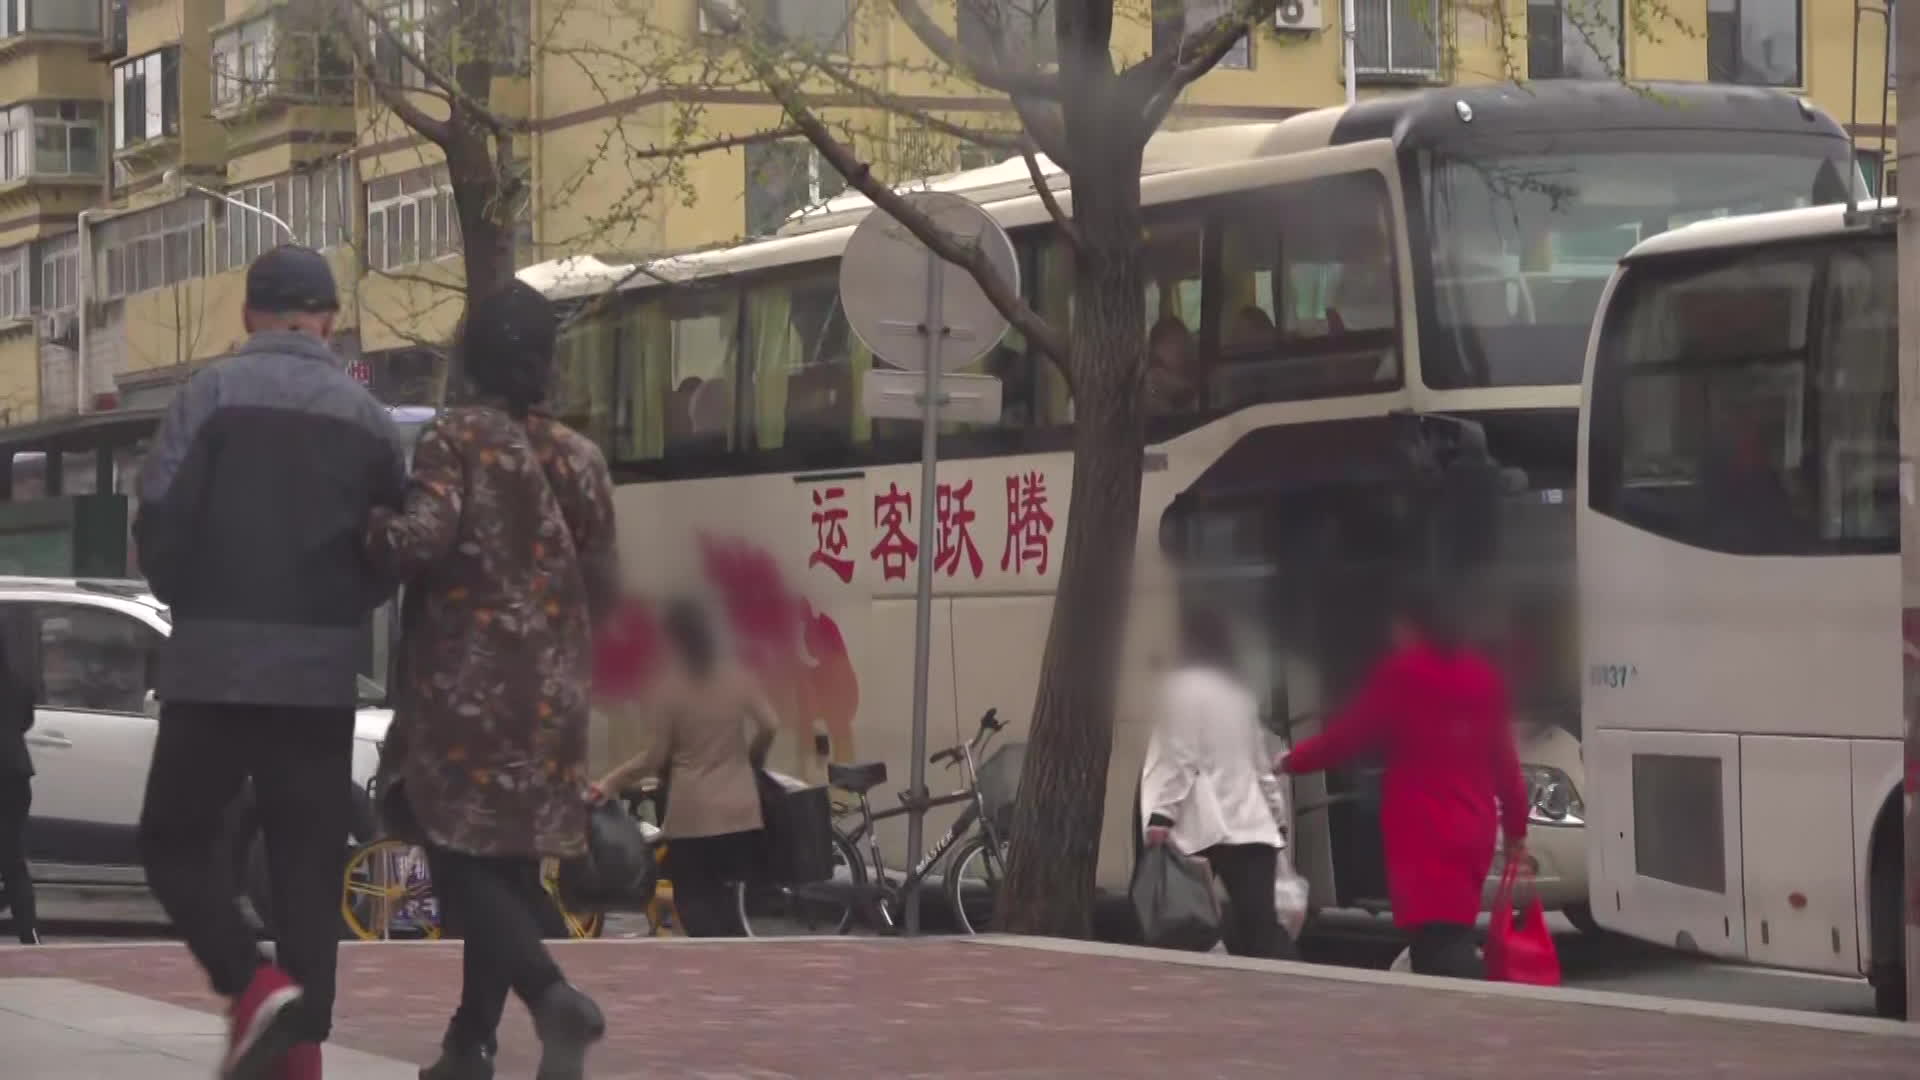 버스 탑승 시각에 늦지 않기 위해 뛰어가는 북한 노동자들의 모습